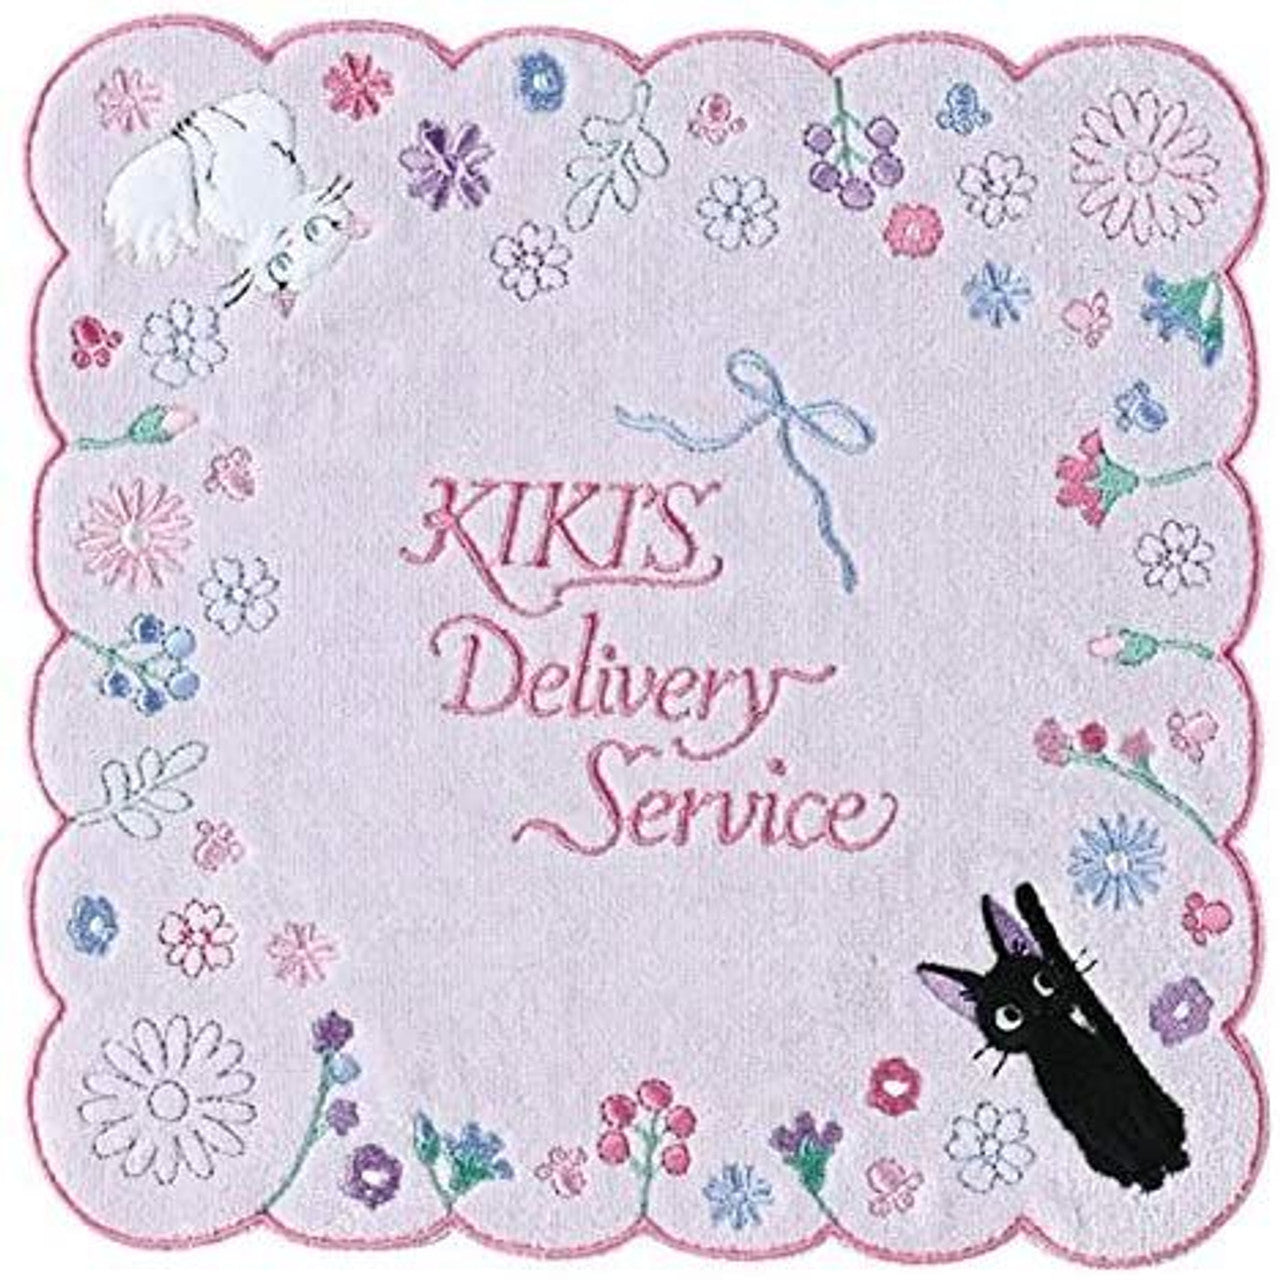 Mini asciugamano Kiki Delivery Service 03